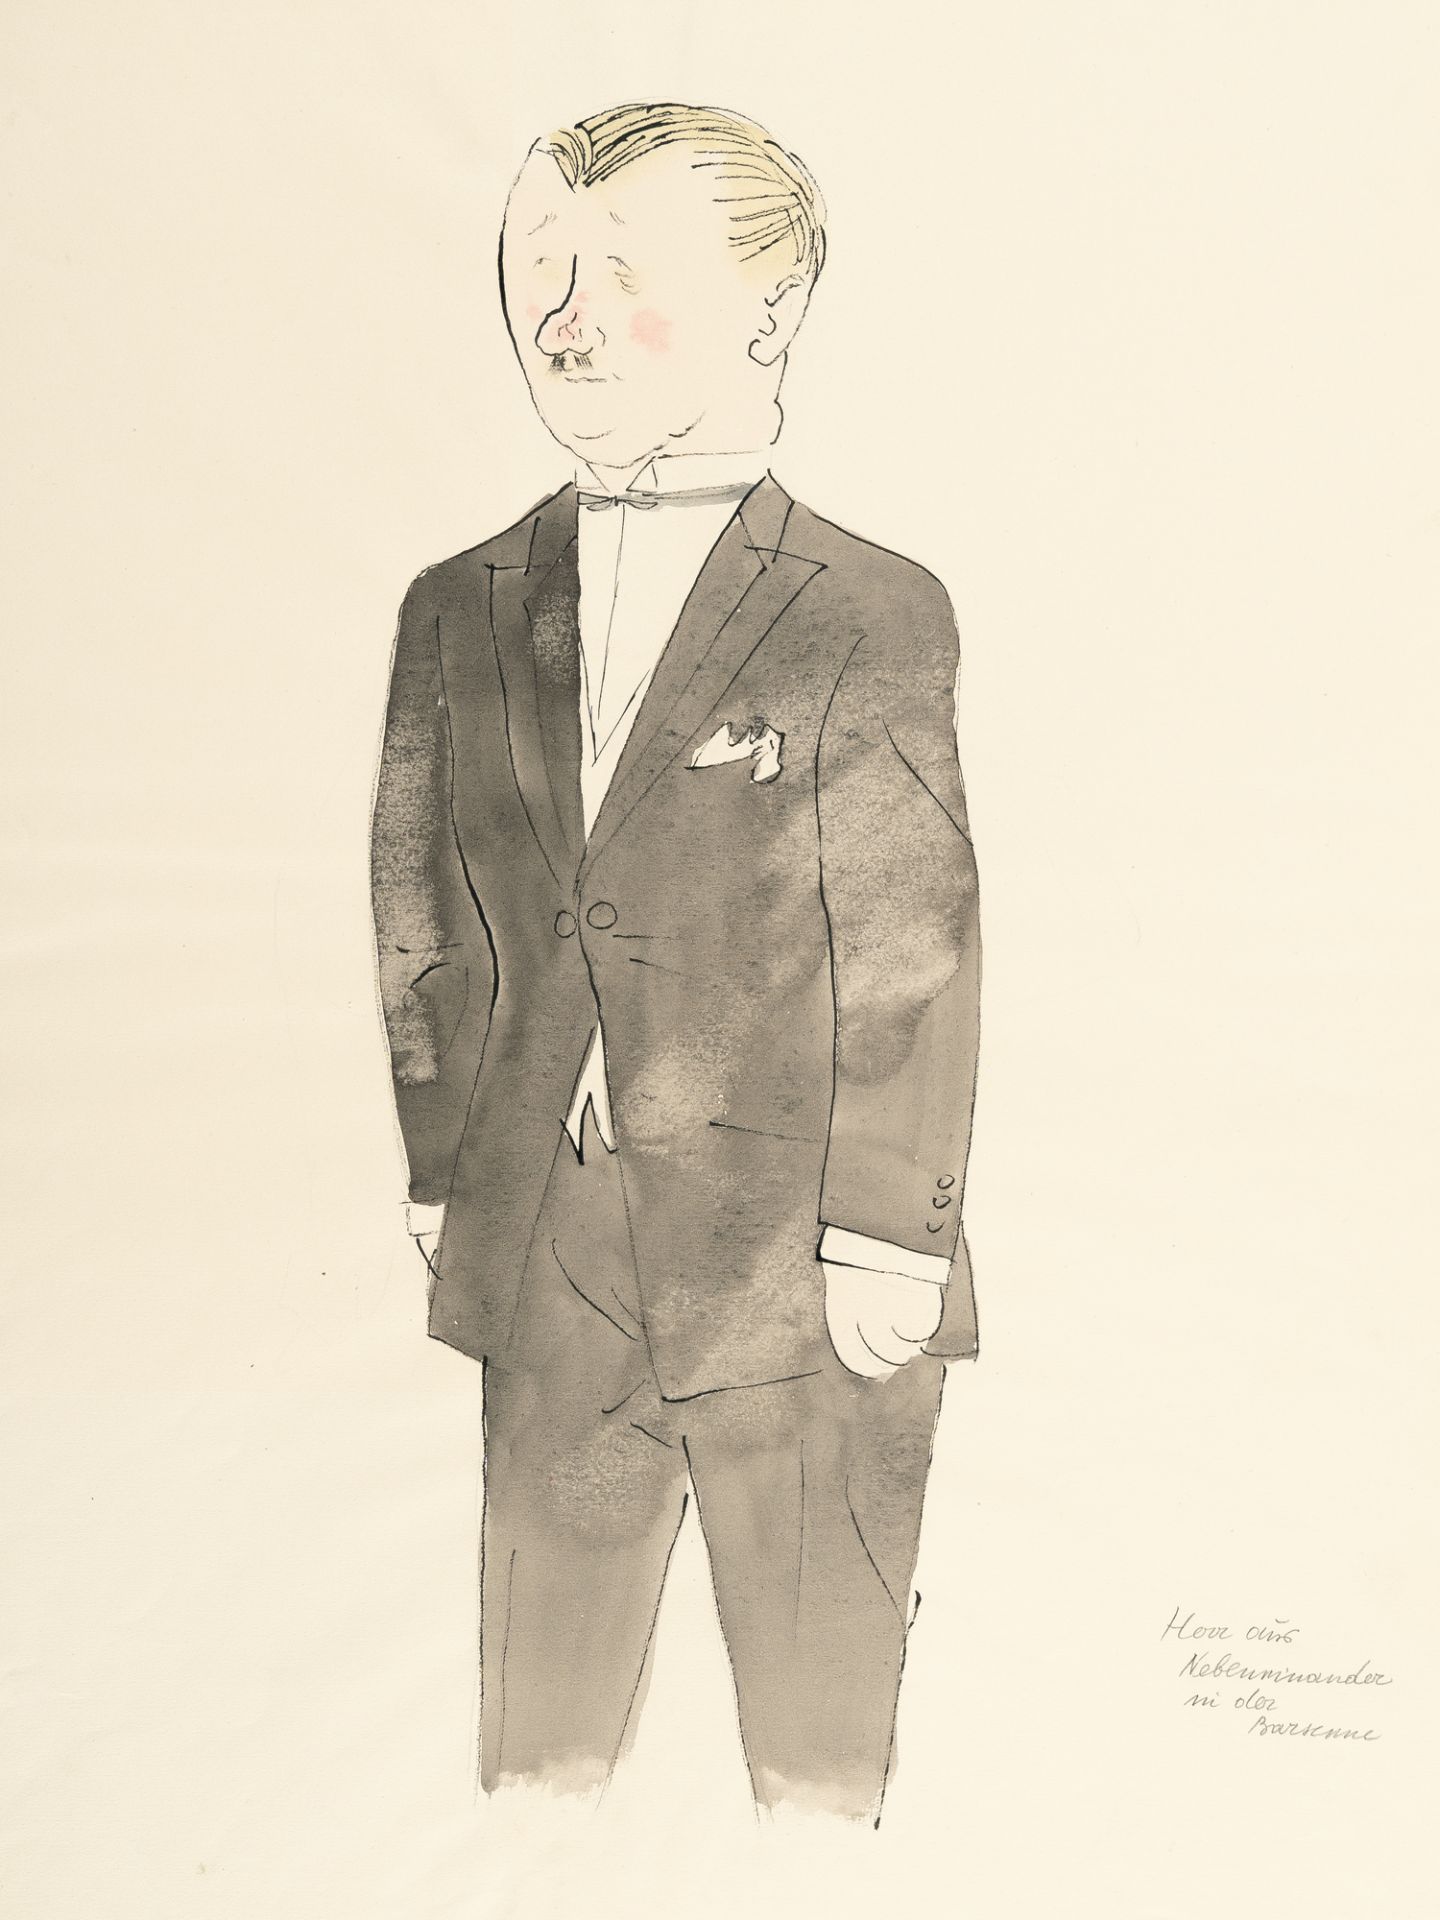 George Grosz (1893 - Berlin - 1959) – Figurine „Herr aus Nebeneinander in der Barszene“ (Georg Kaise